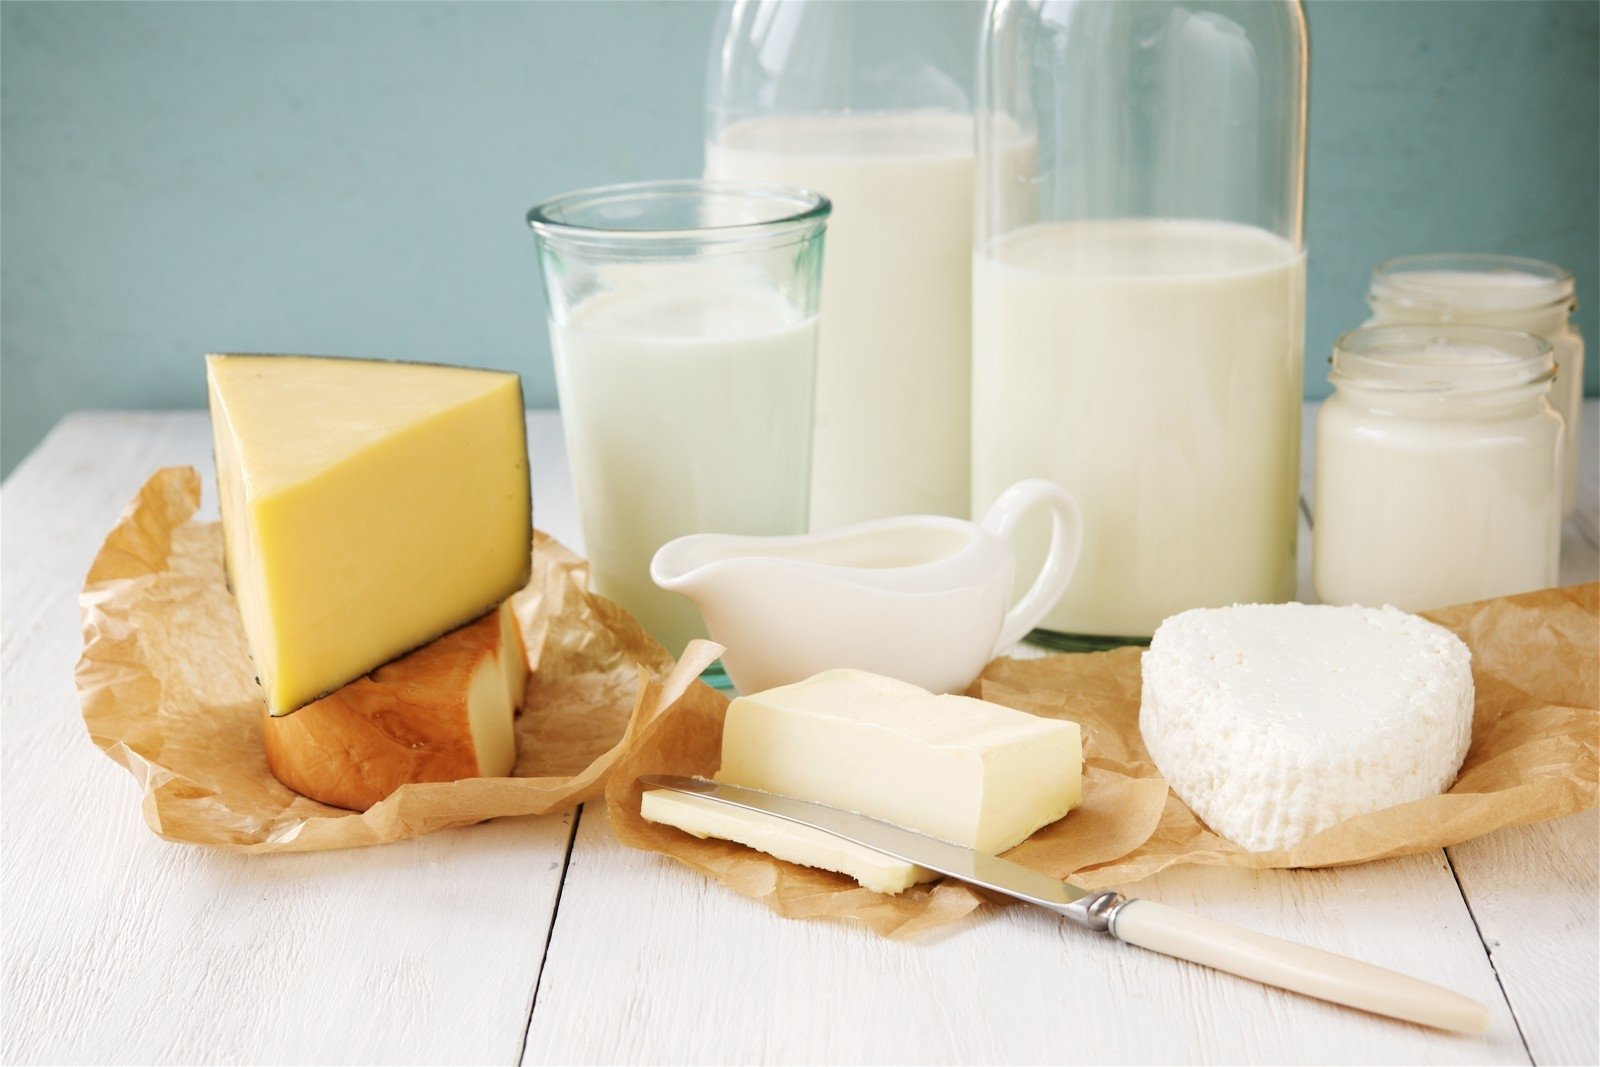 Parduotuvių lentynose – tik saugūs vartoti pieno produktai